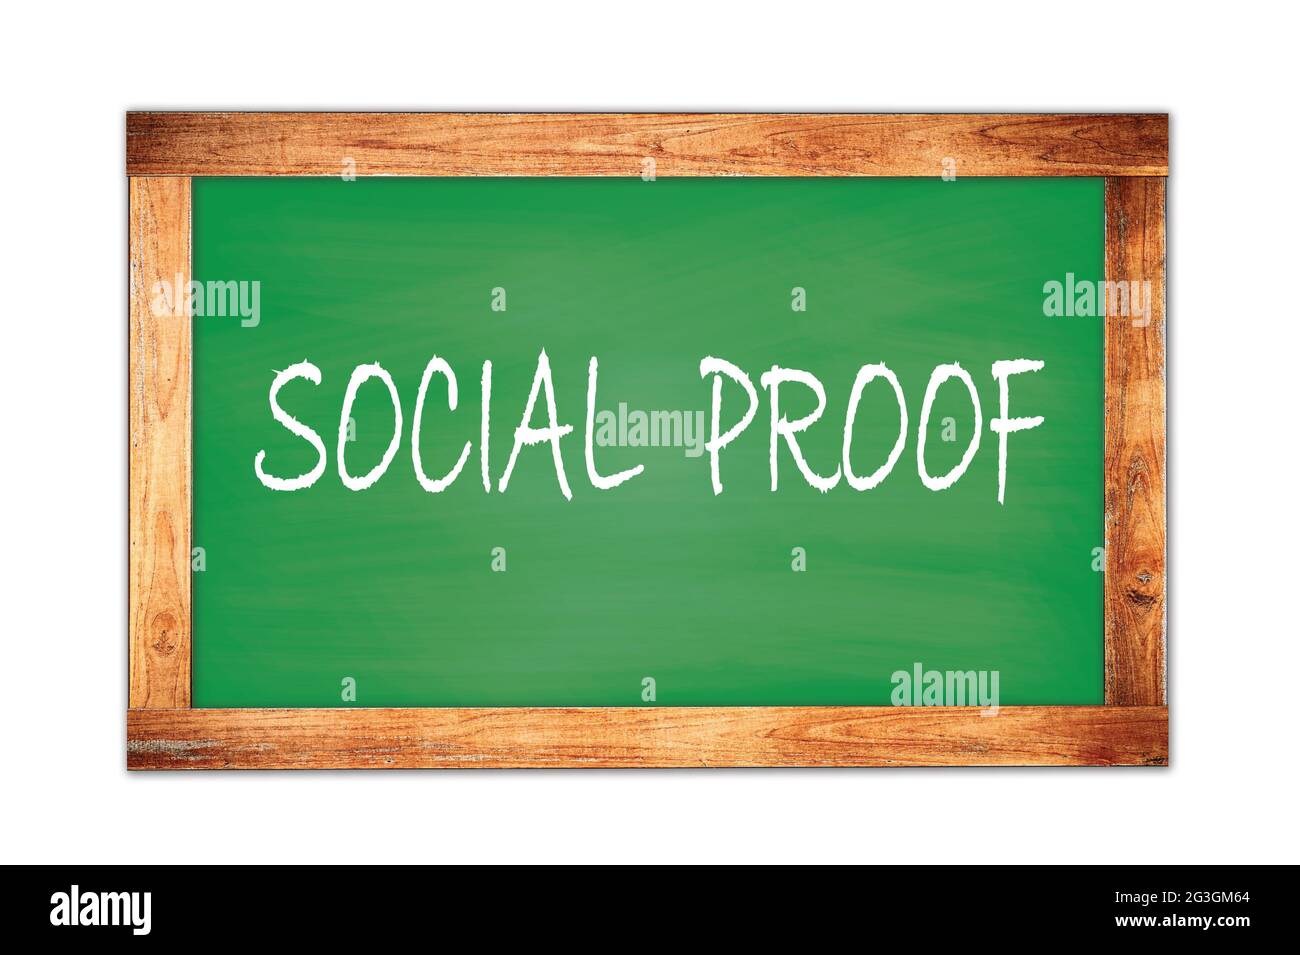 SOCIAL  PROOF text written on green wooden frame school blackboard. Stock Photo